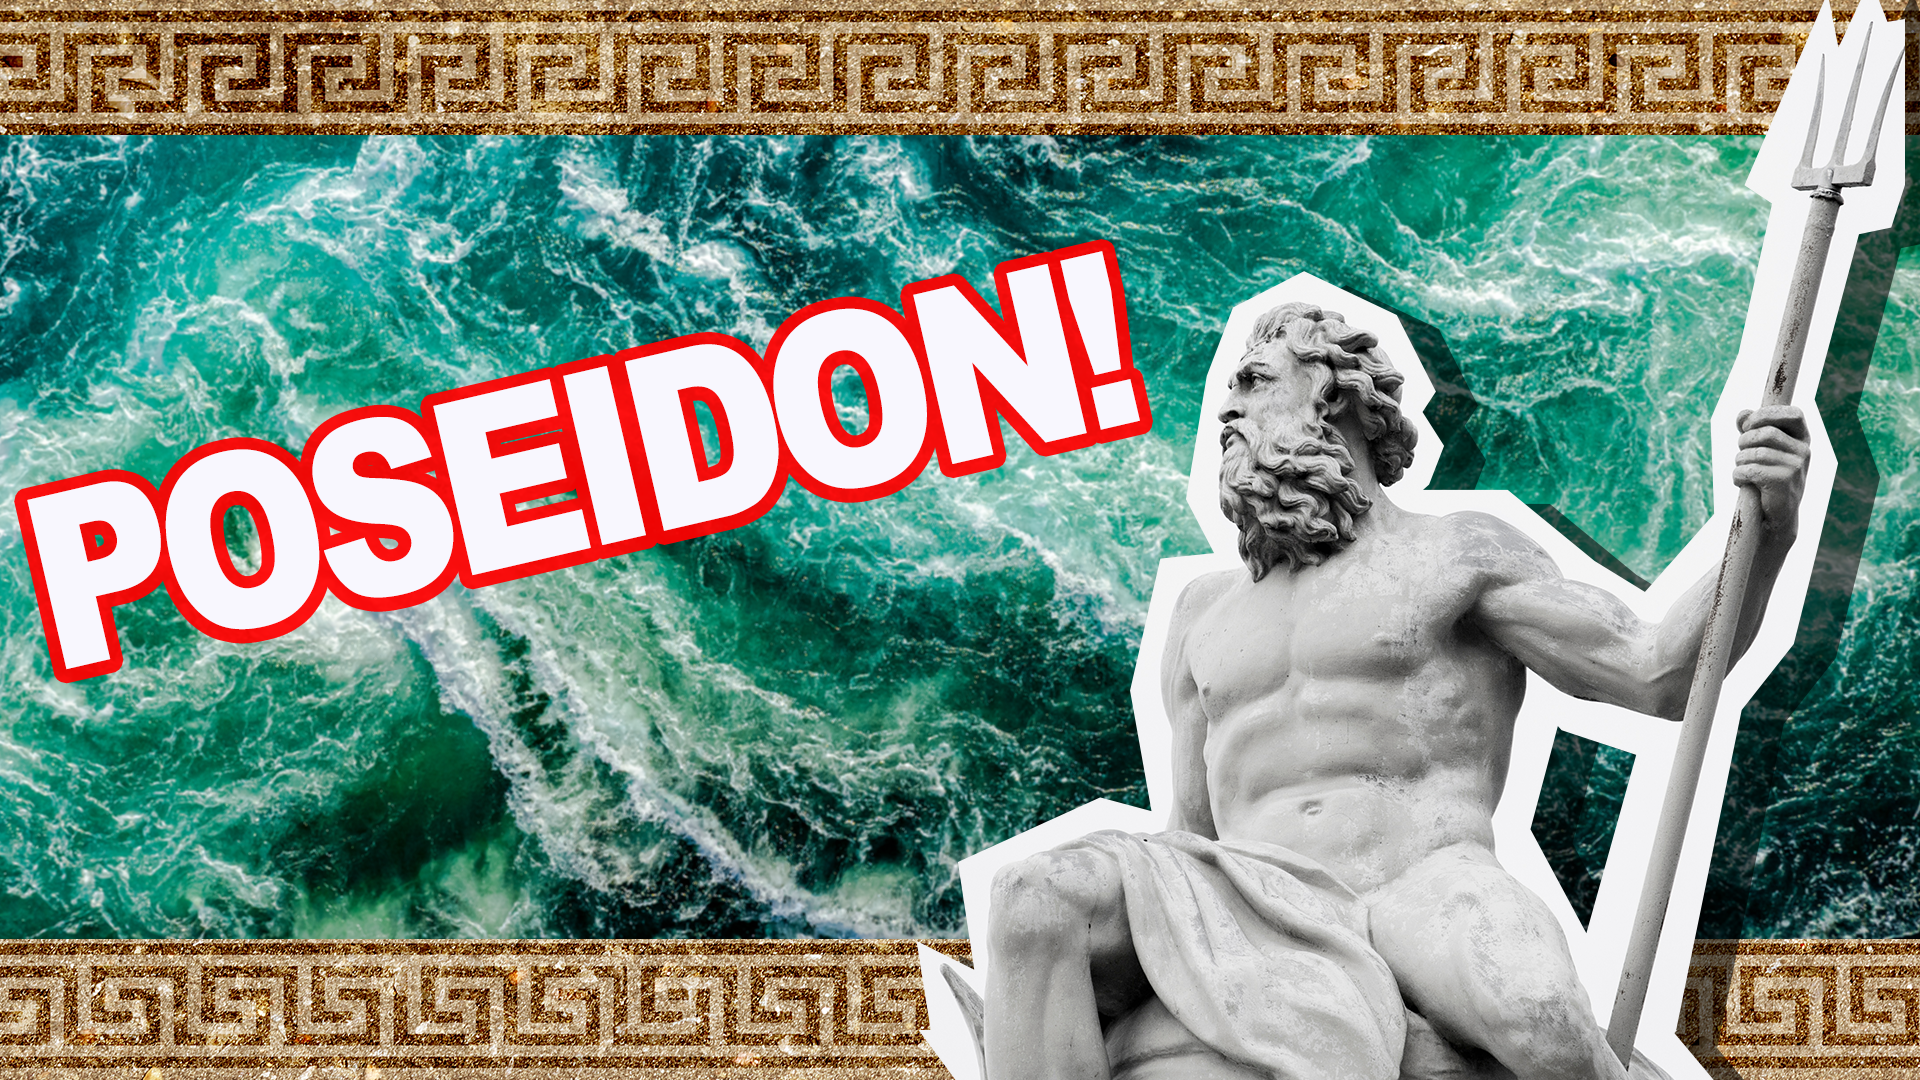 Poseidon!